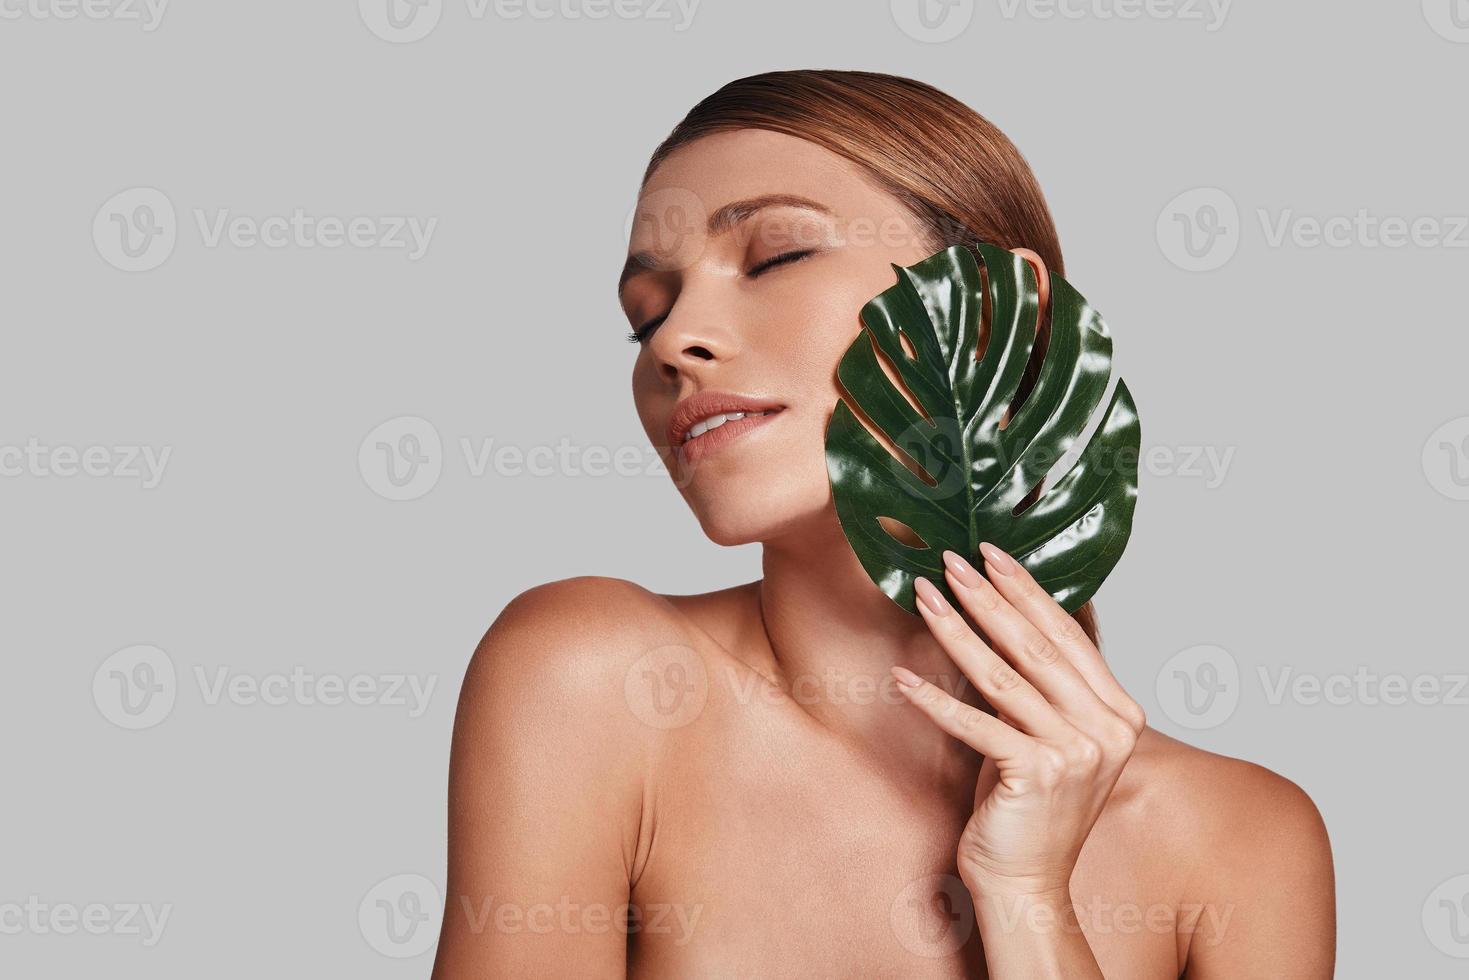 impossible de résister à sa beauté. séduisante jeune femme gardant les yeux fermés et couvrant de feuilles en se tenant debout sur fond gris photo